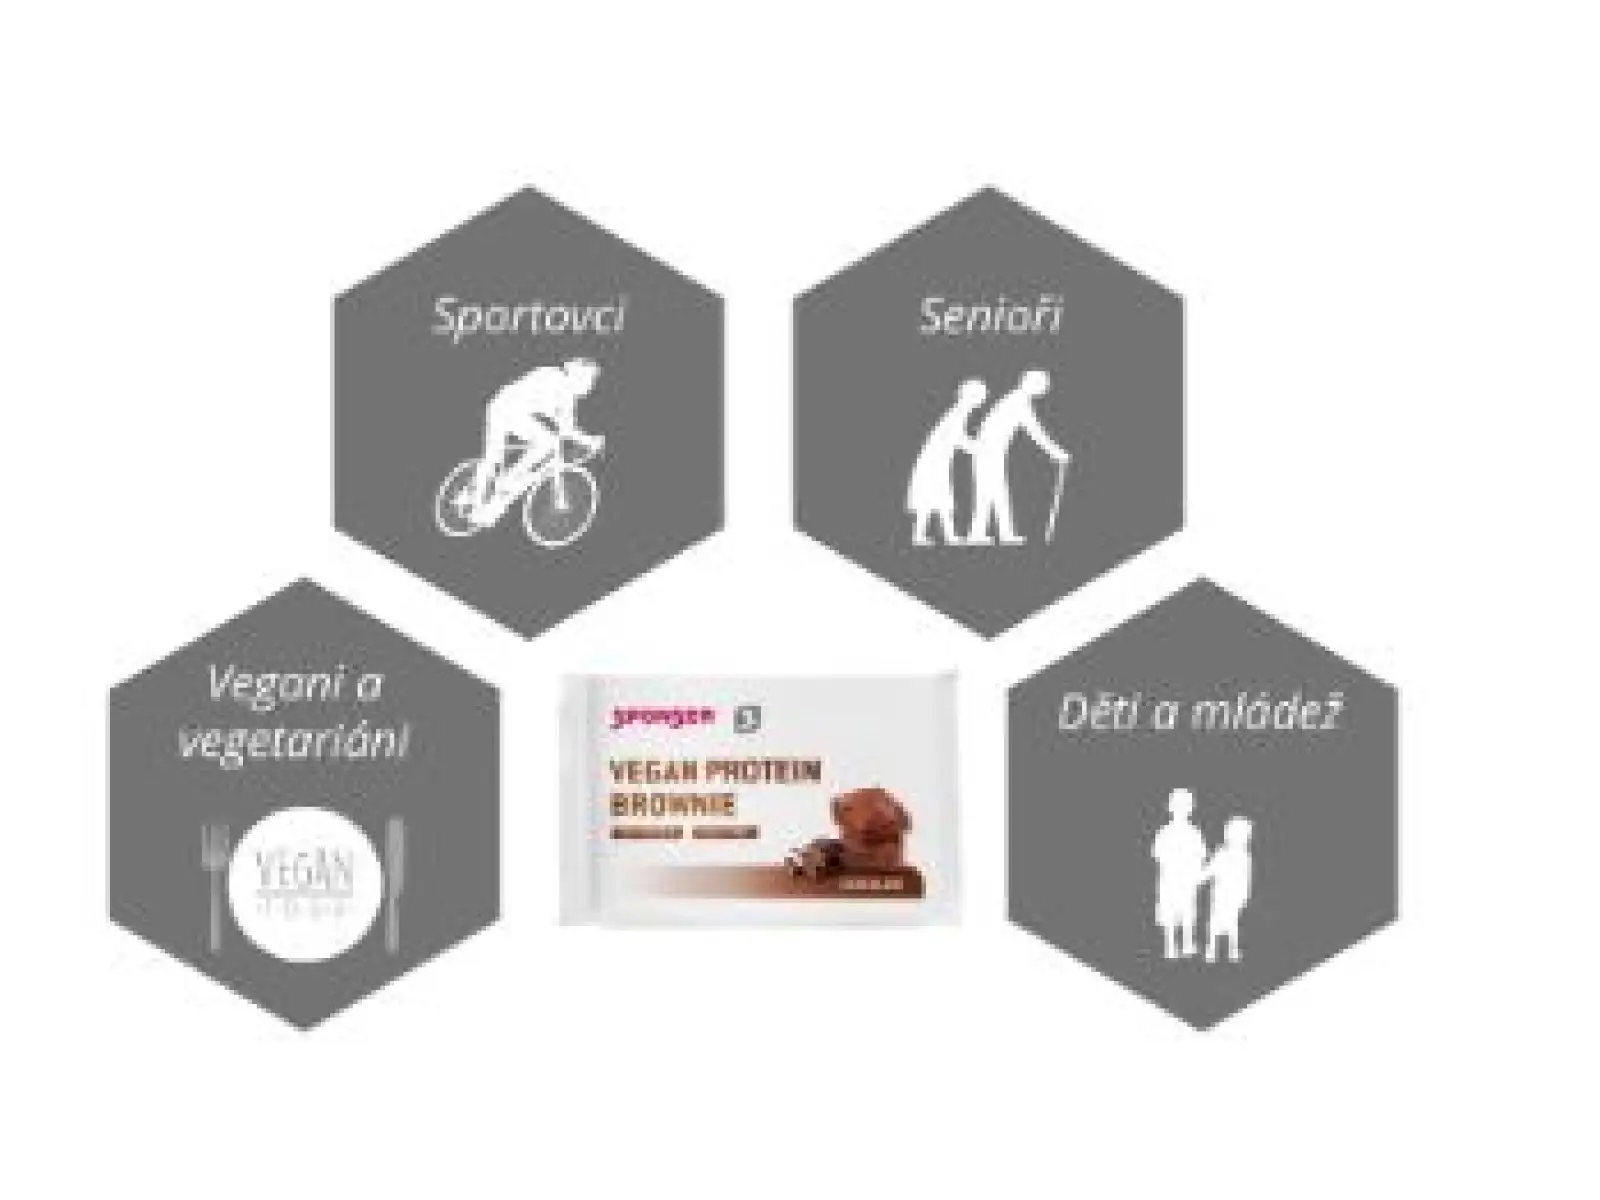 Sponser Vegan Protein Brownie 50 g